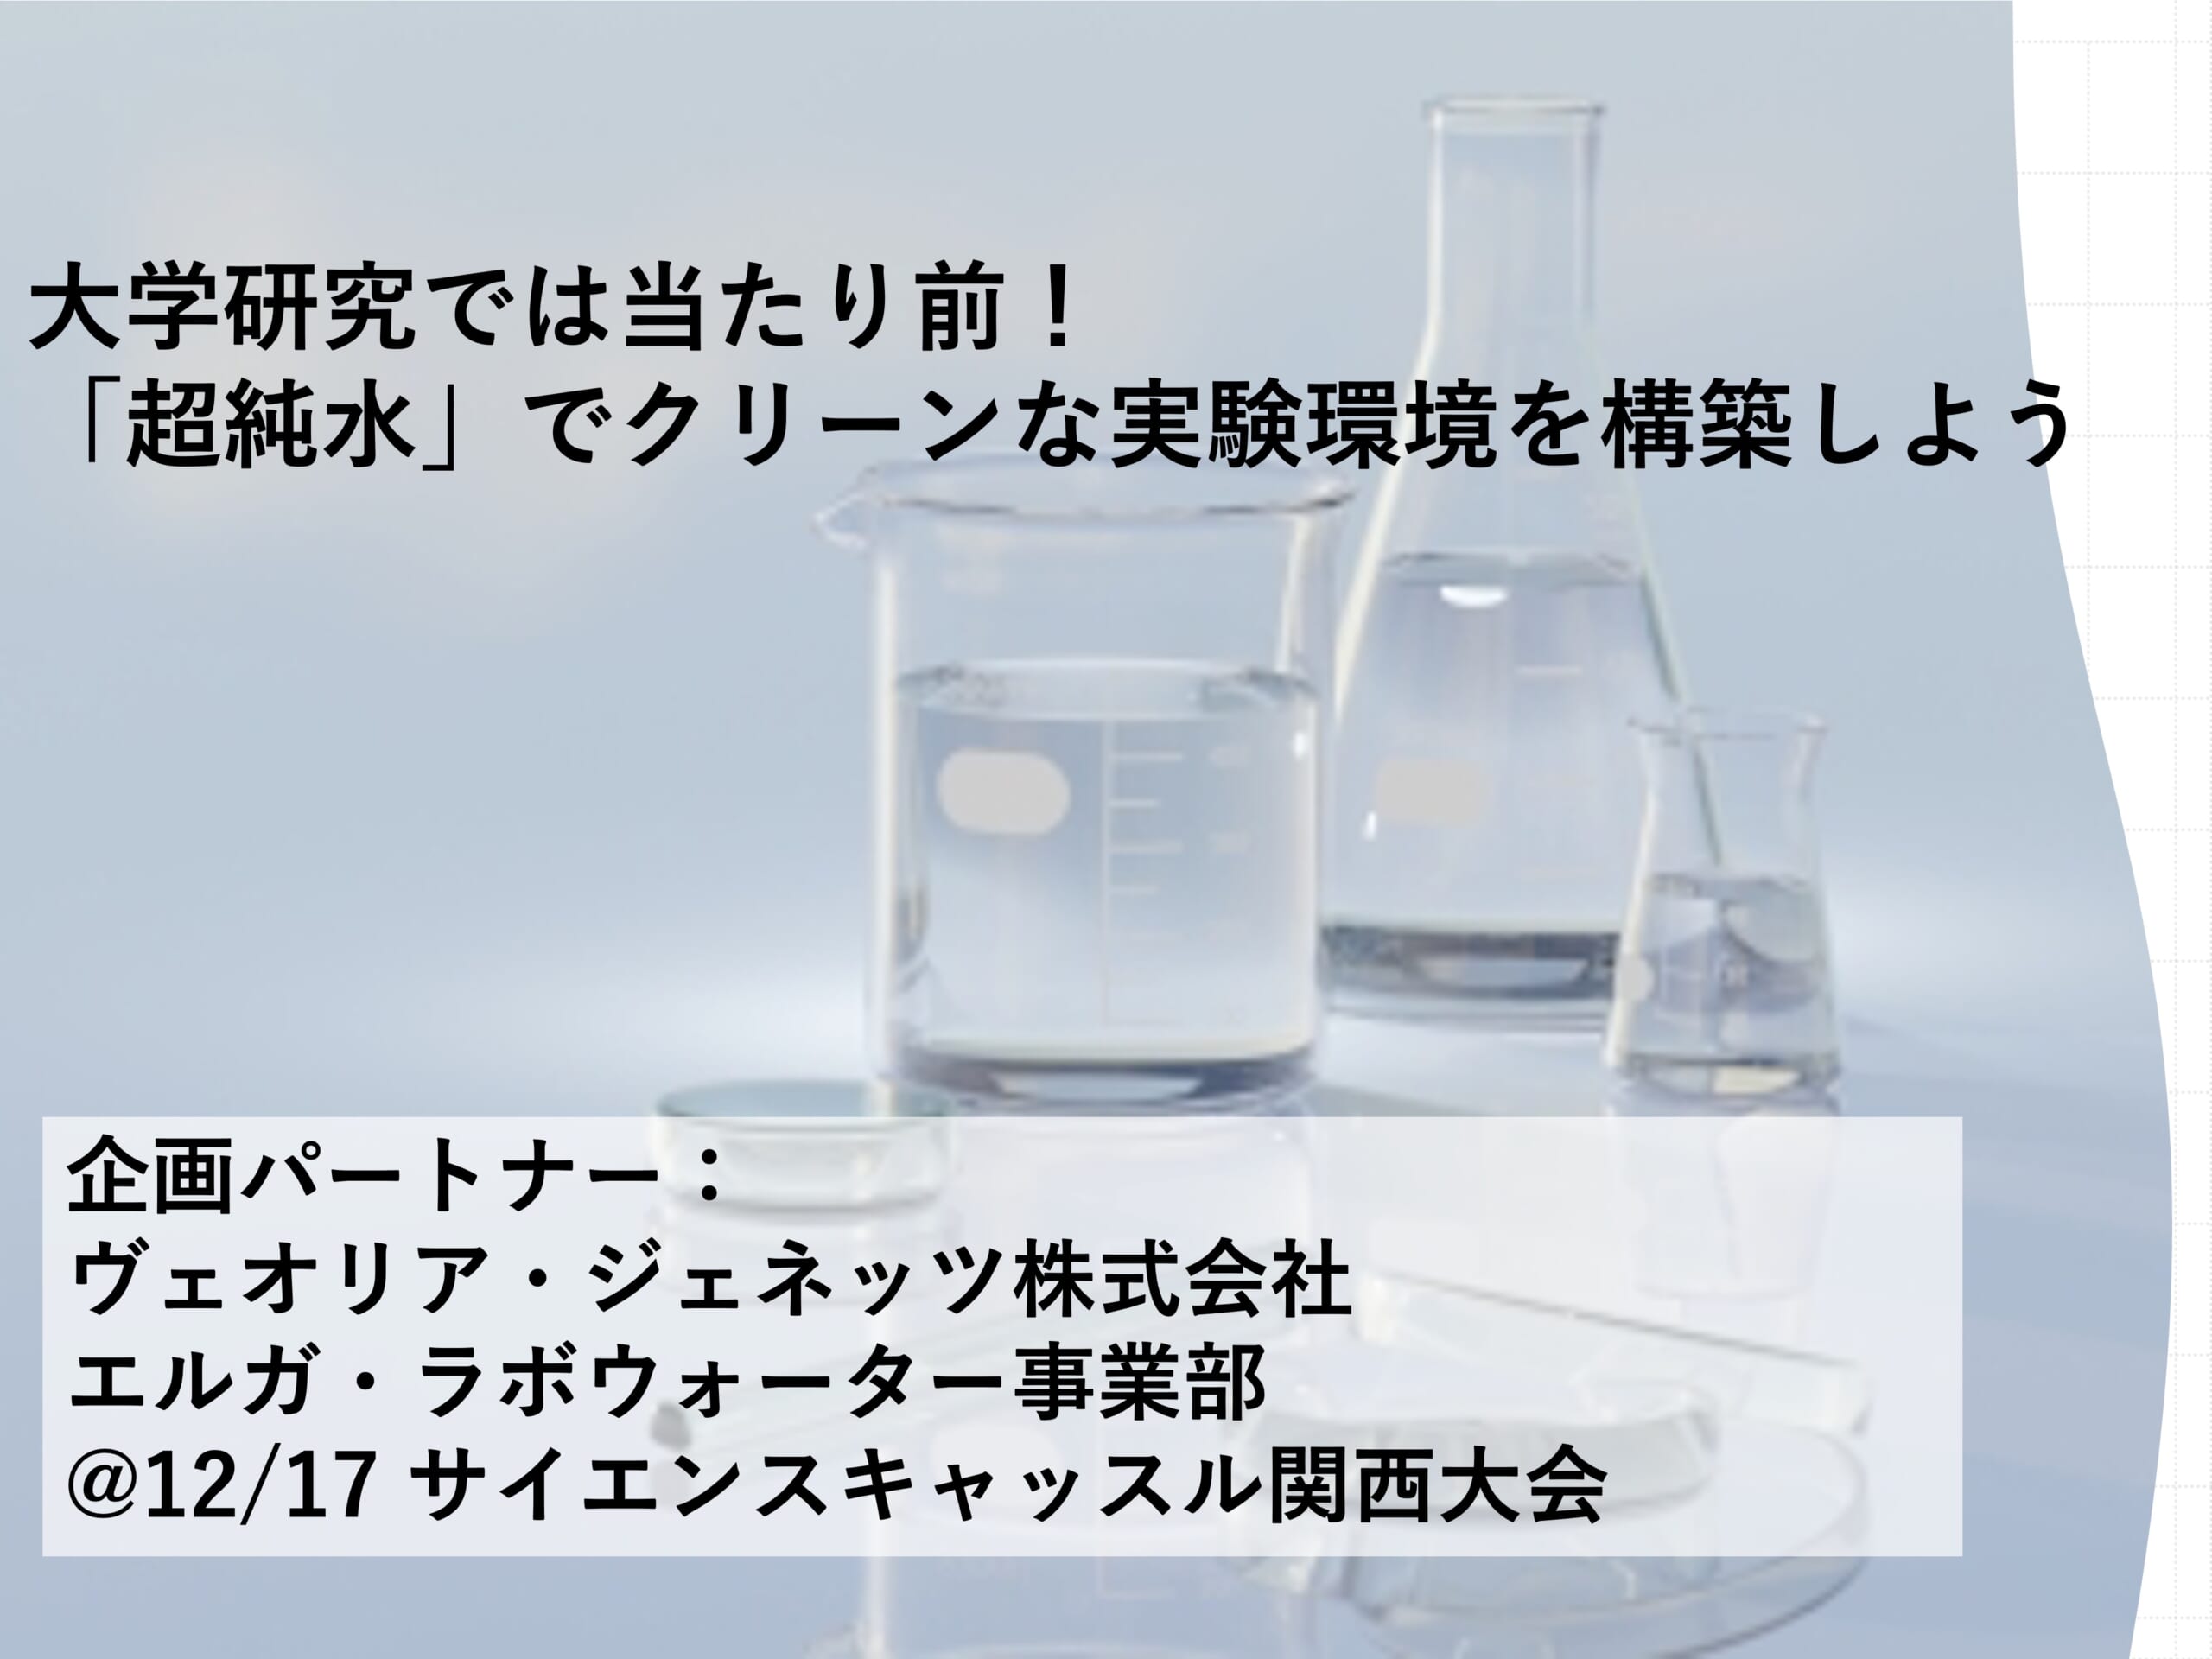 ＠関西大会（12/17）大学研究では当たり前！ 「超純水」でクリーンな実験環境を構築しよう